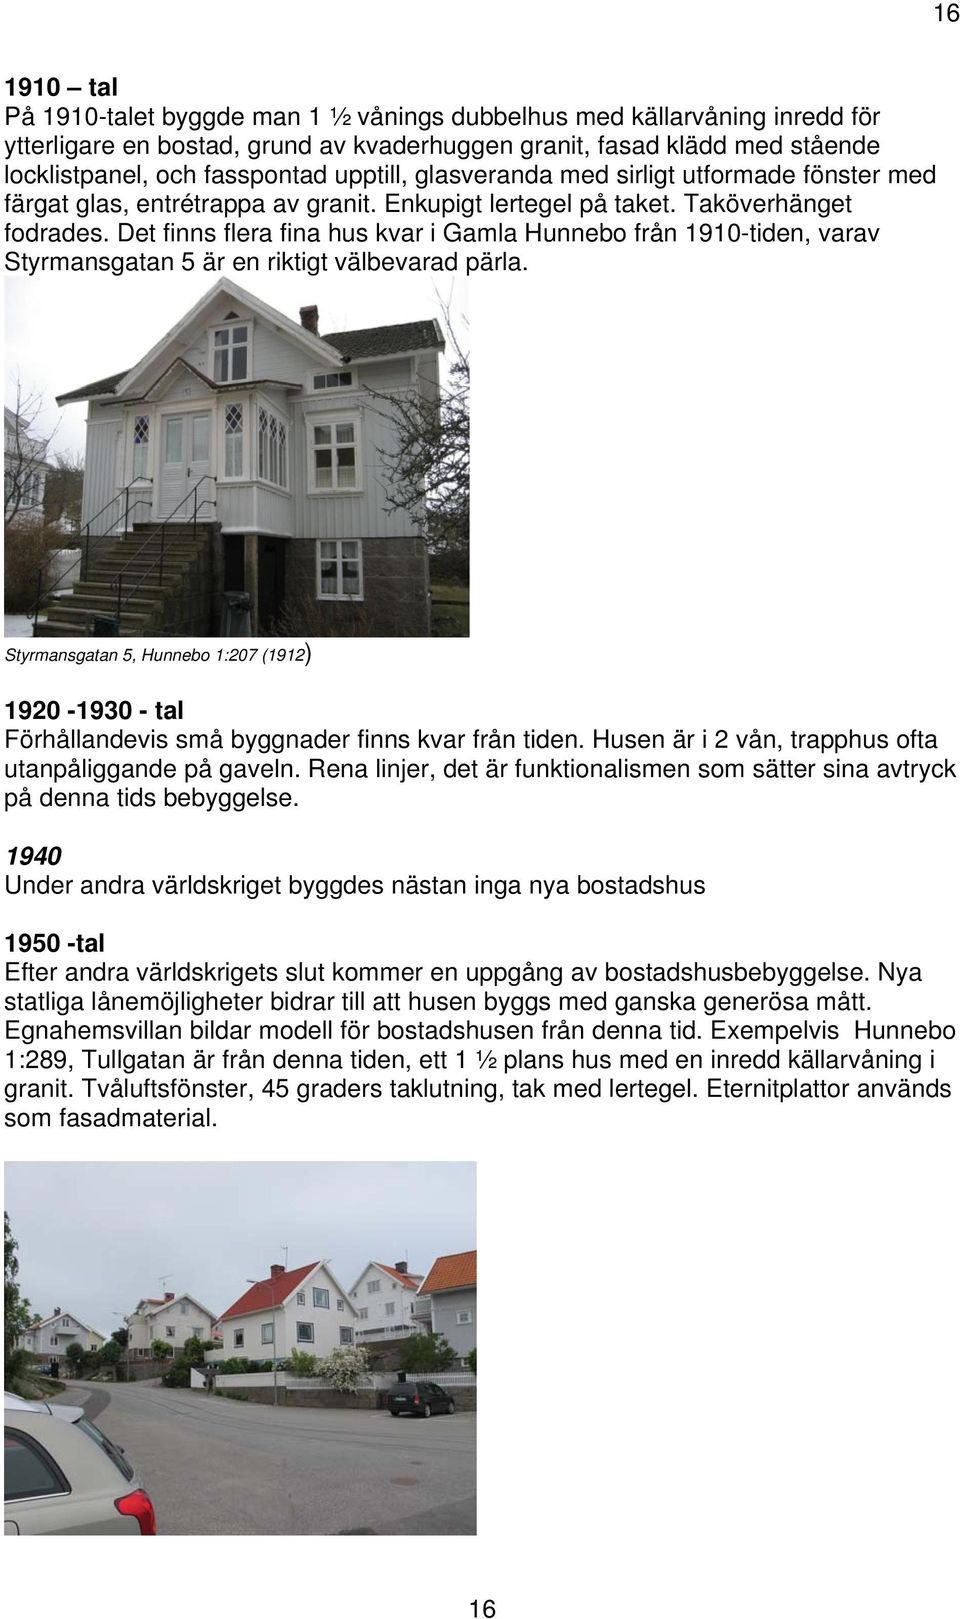 Det finns flera fina hus kvar i Gamla Hunnebo från 1910-tiden, varav Styrmansgatan 5 är en riktigt välbevarad pärla.